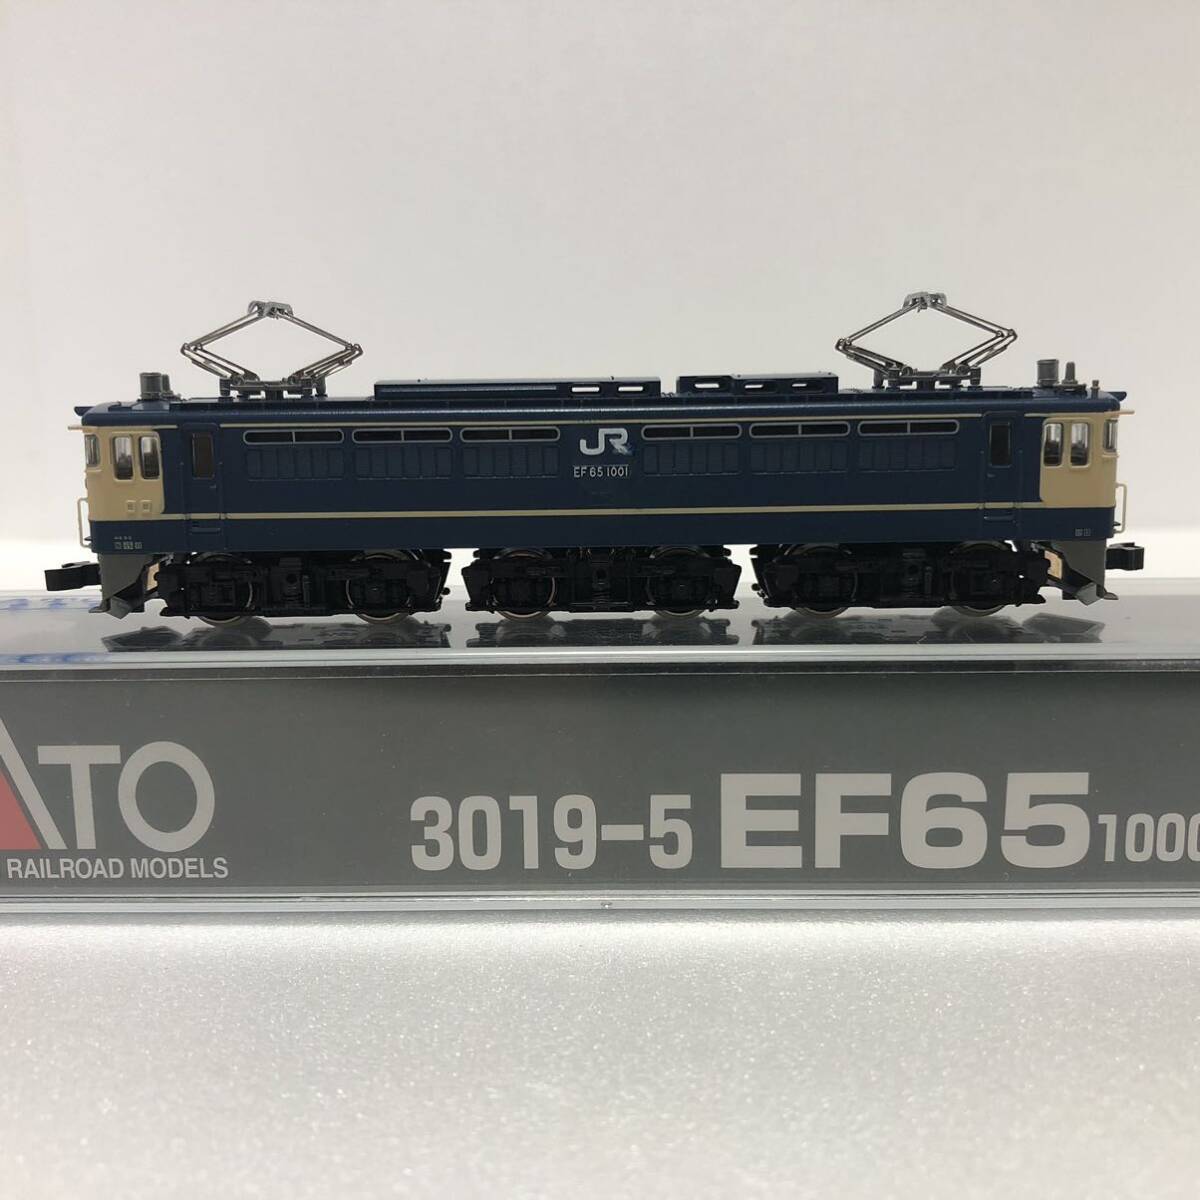 ★1円スタート★3019-5 EF65 1000 前期形 電気機関車 KATO_画像3